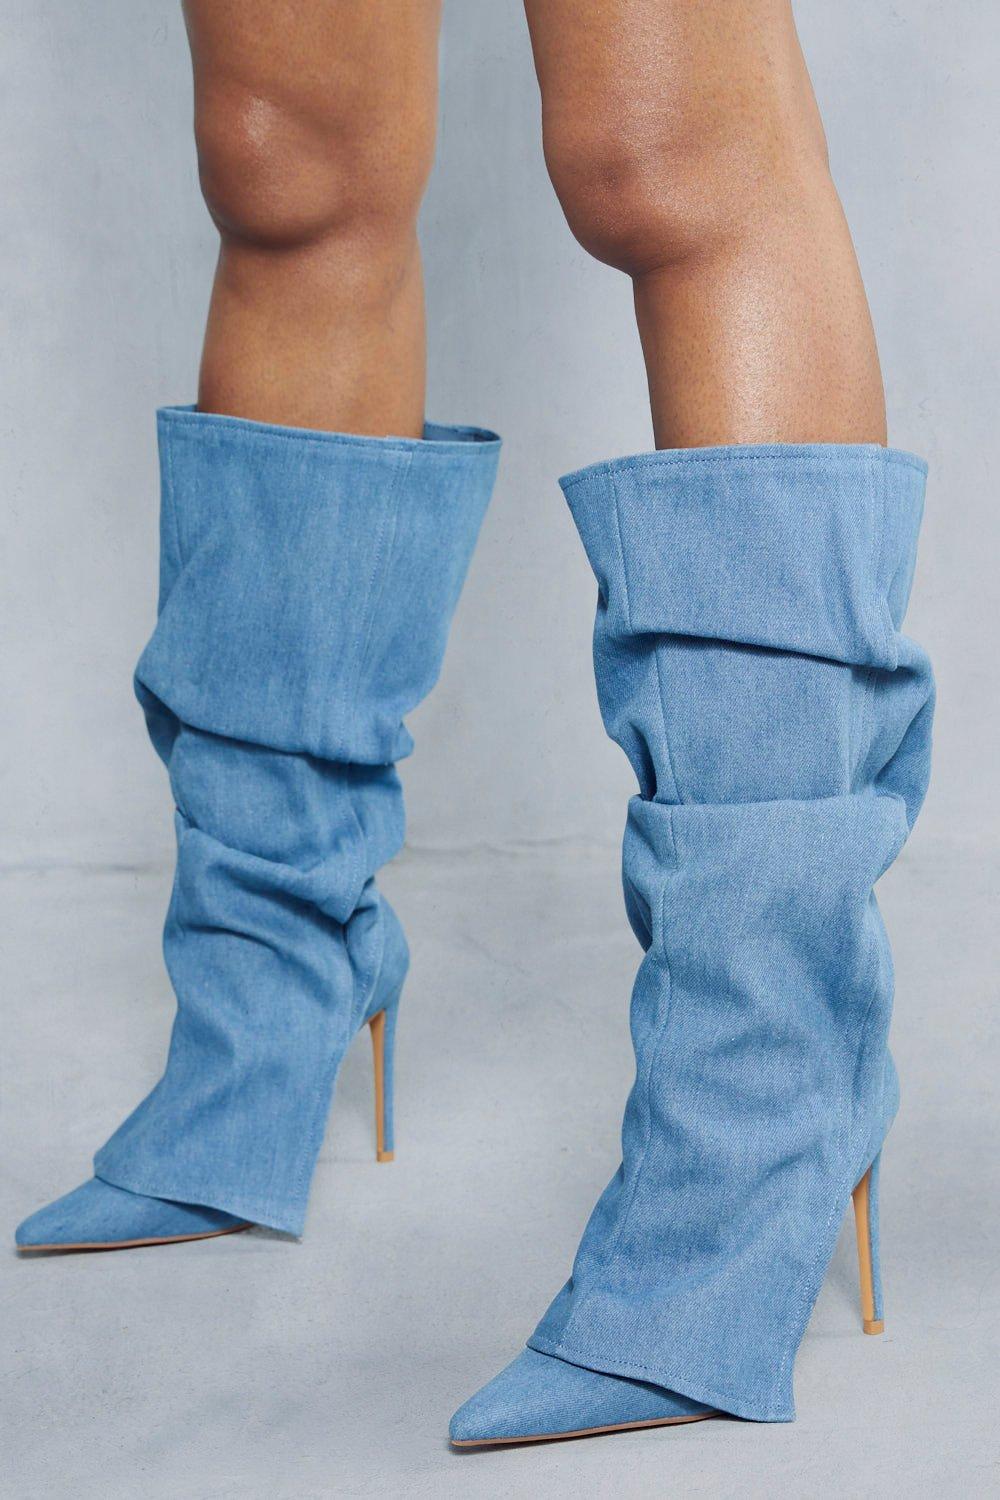 Womens Denim Overlay Knee High Boots - cream - 5, Cream